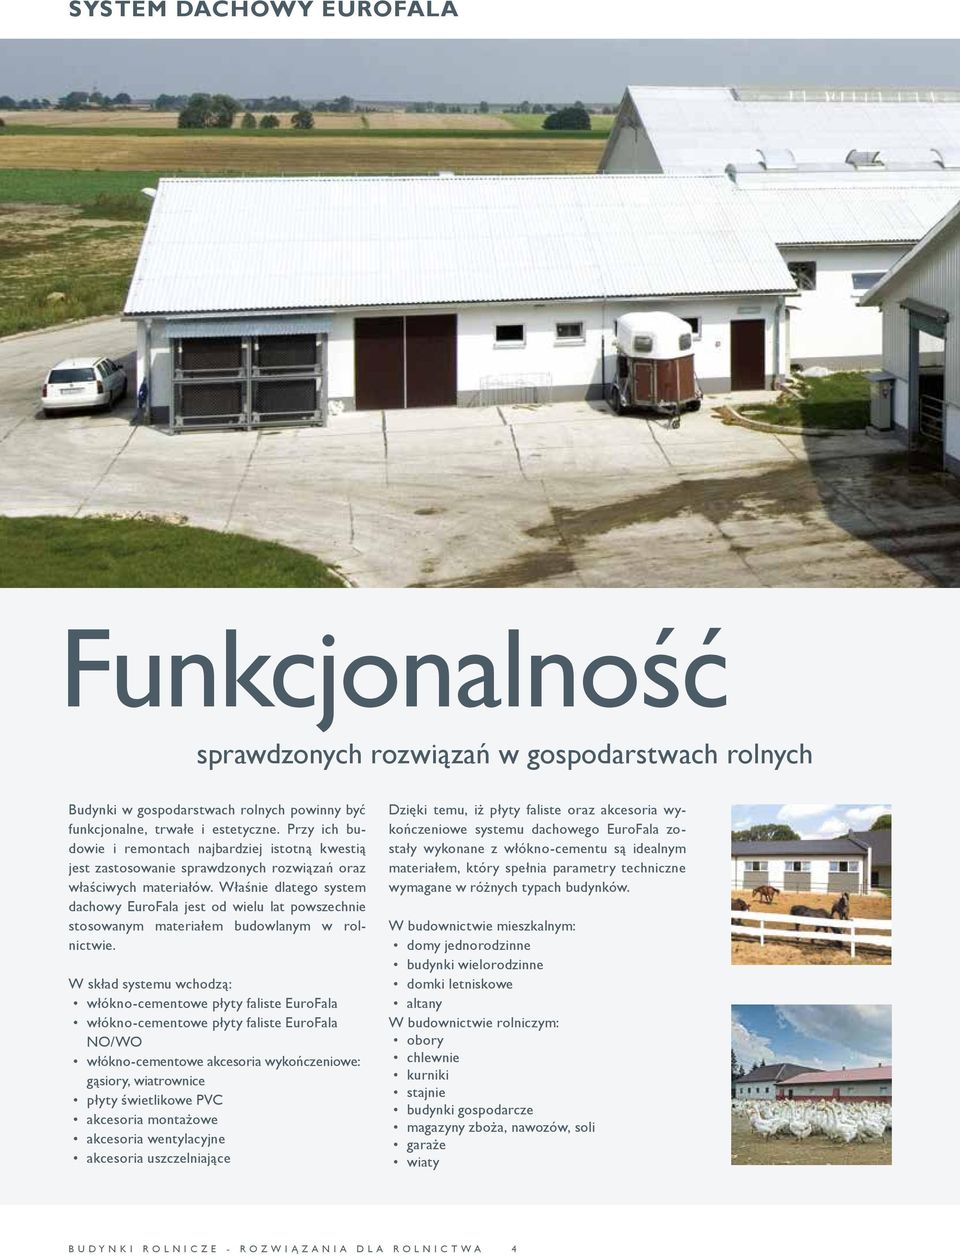 Właśnie dlatego system dachowy EuroFala jest od wielu lat powszechnie stosowanym materiałem budowlanym w rolnictwie.